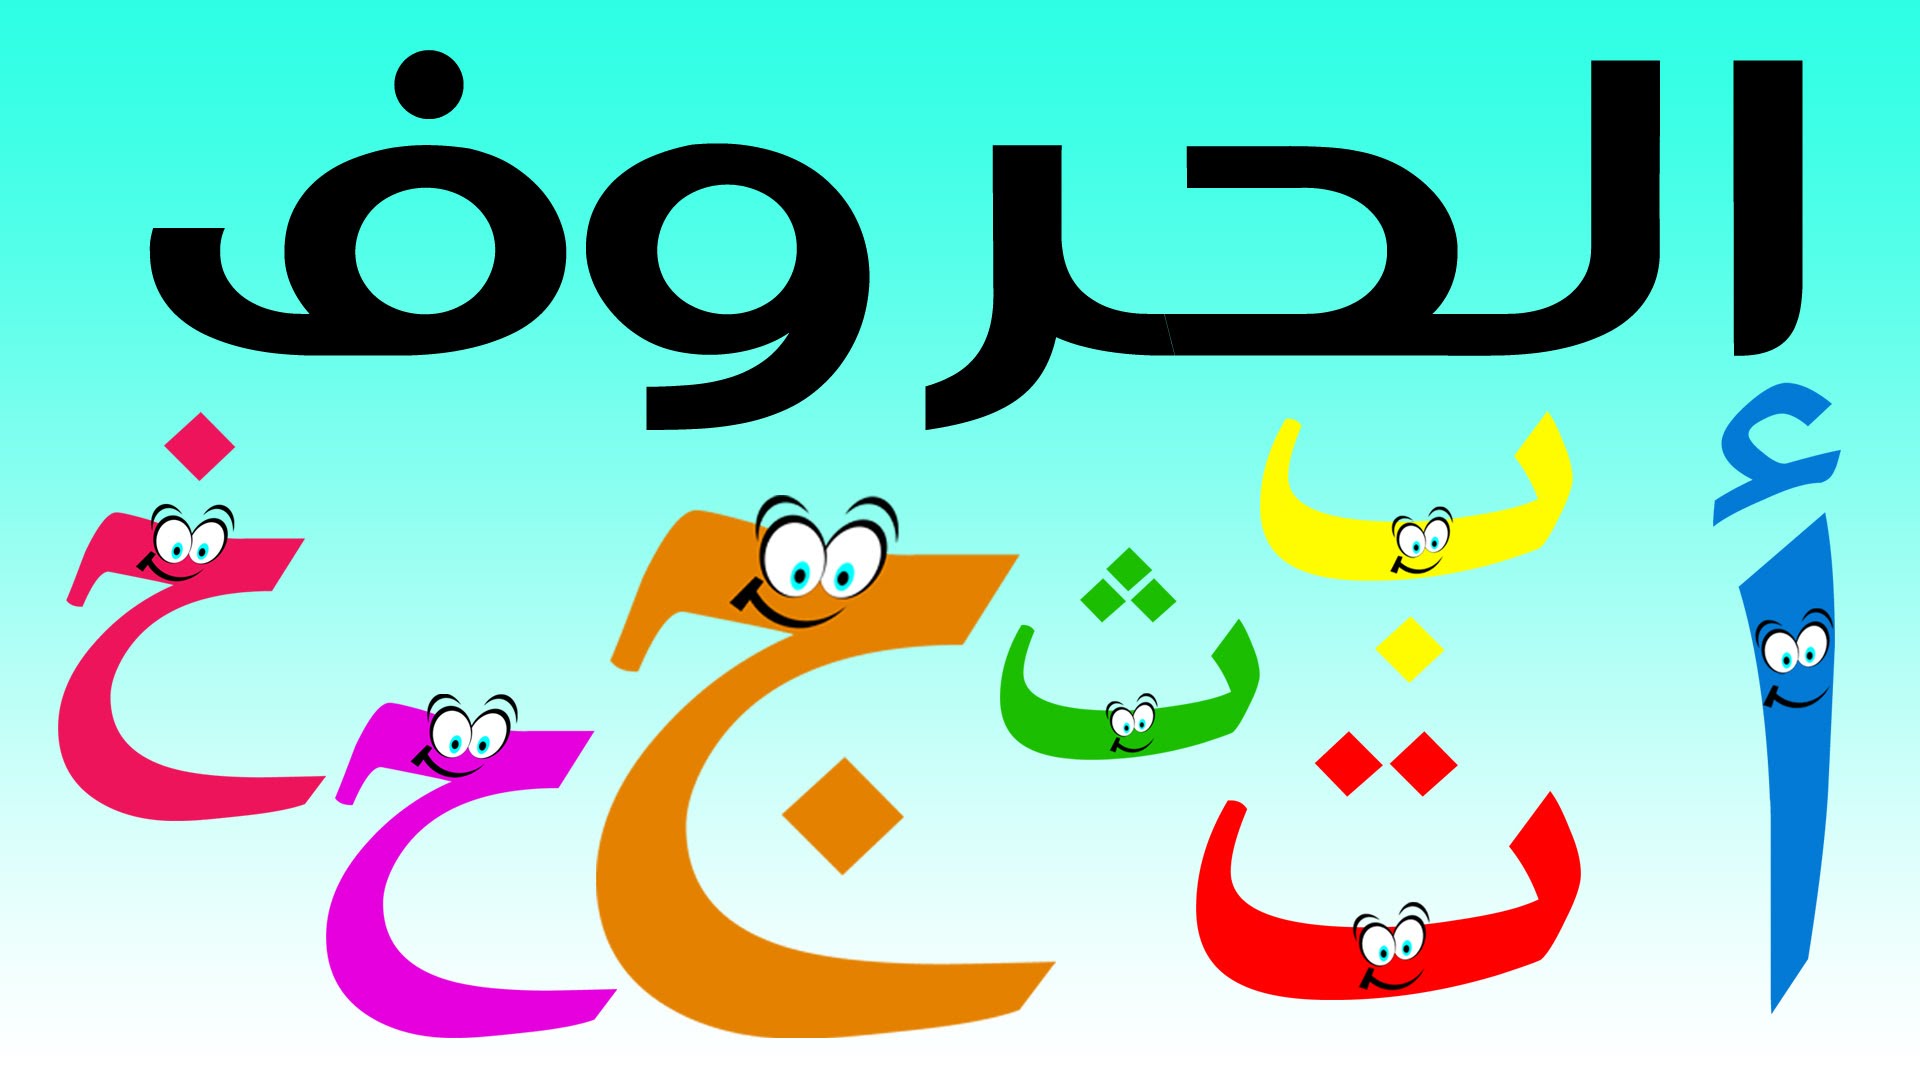 سلسلة حلقات كرتون لتعليم الحروف العربية لاطفال البستان ما...